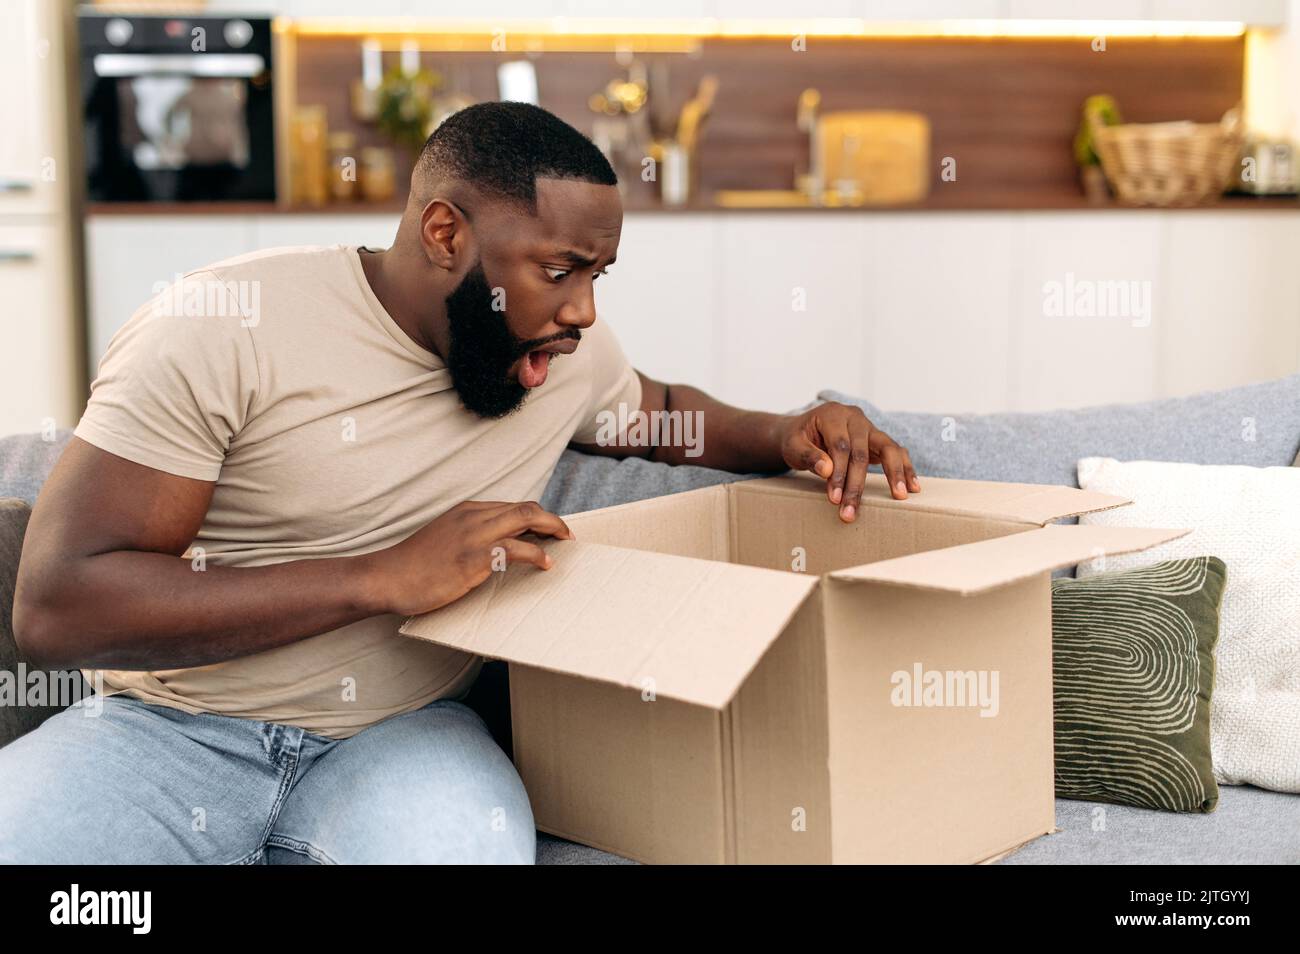 Un gars afro-américain confus choqué ouvrant une grande boîte de carton, déballant la commande d'un magasin Internet à la maison, se sent frustré par le service de livraison longue et les marchandises qui ont reçu, éprouvant Banque D'Images